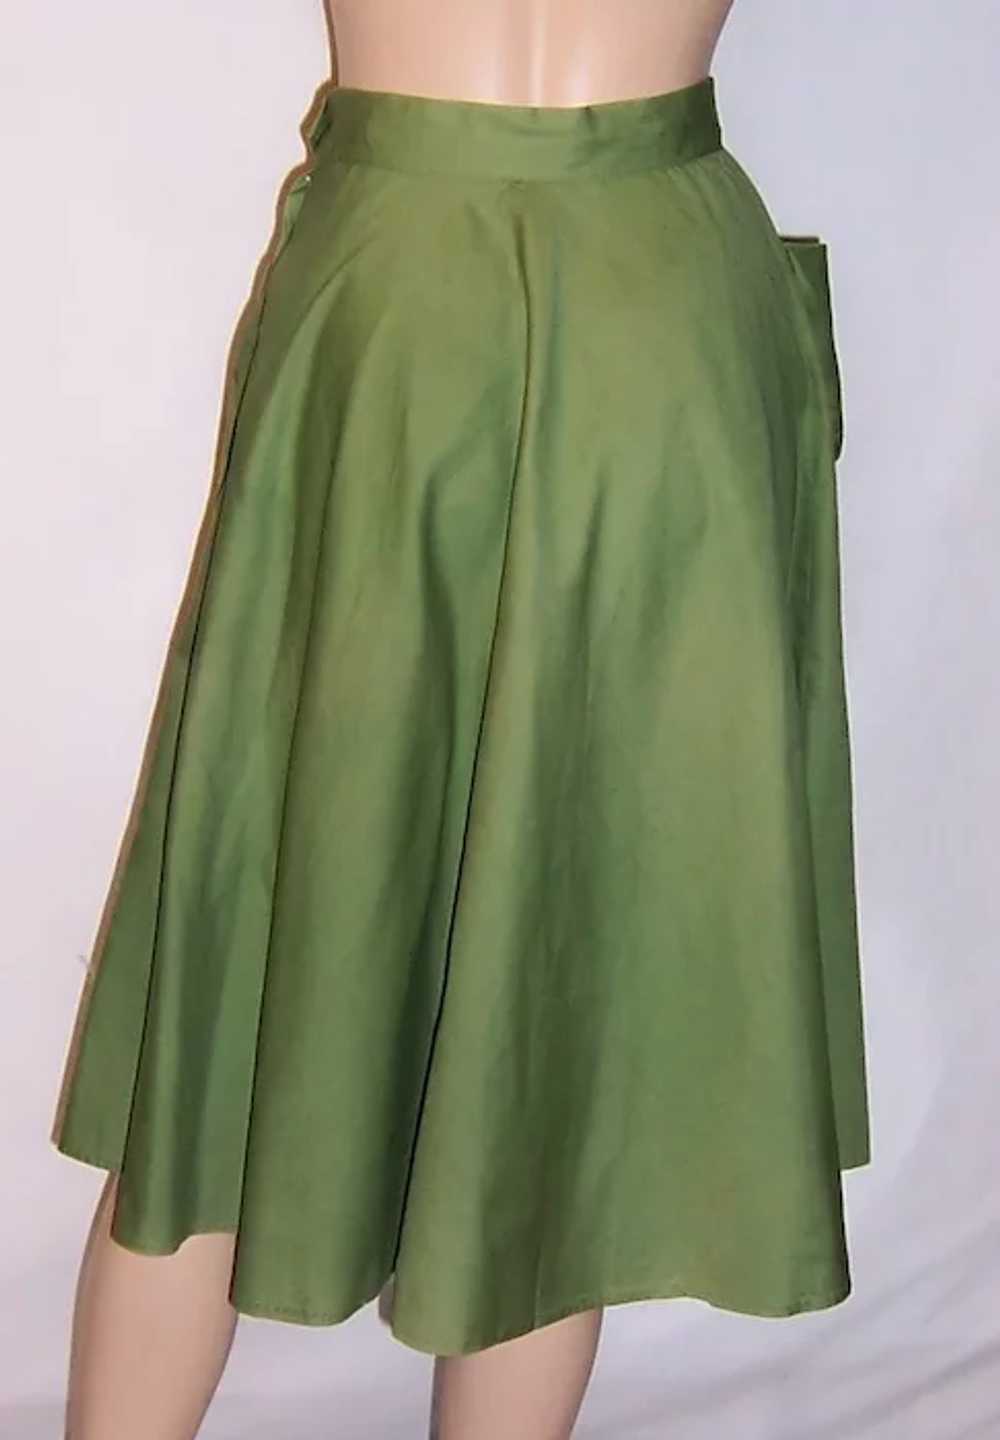 1950's Moss Green Summertime Garden Skirt with Po… - image 3